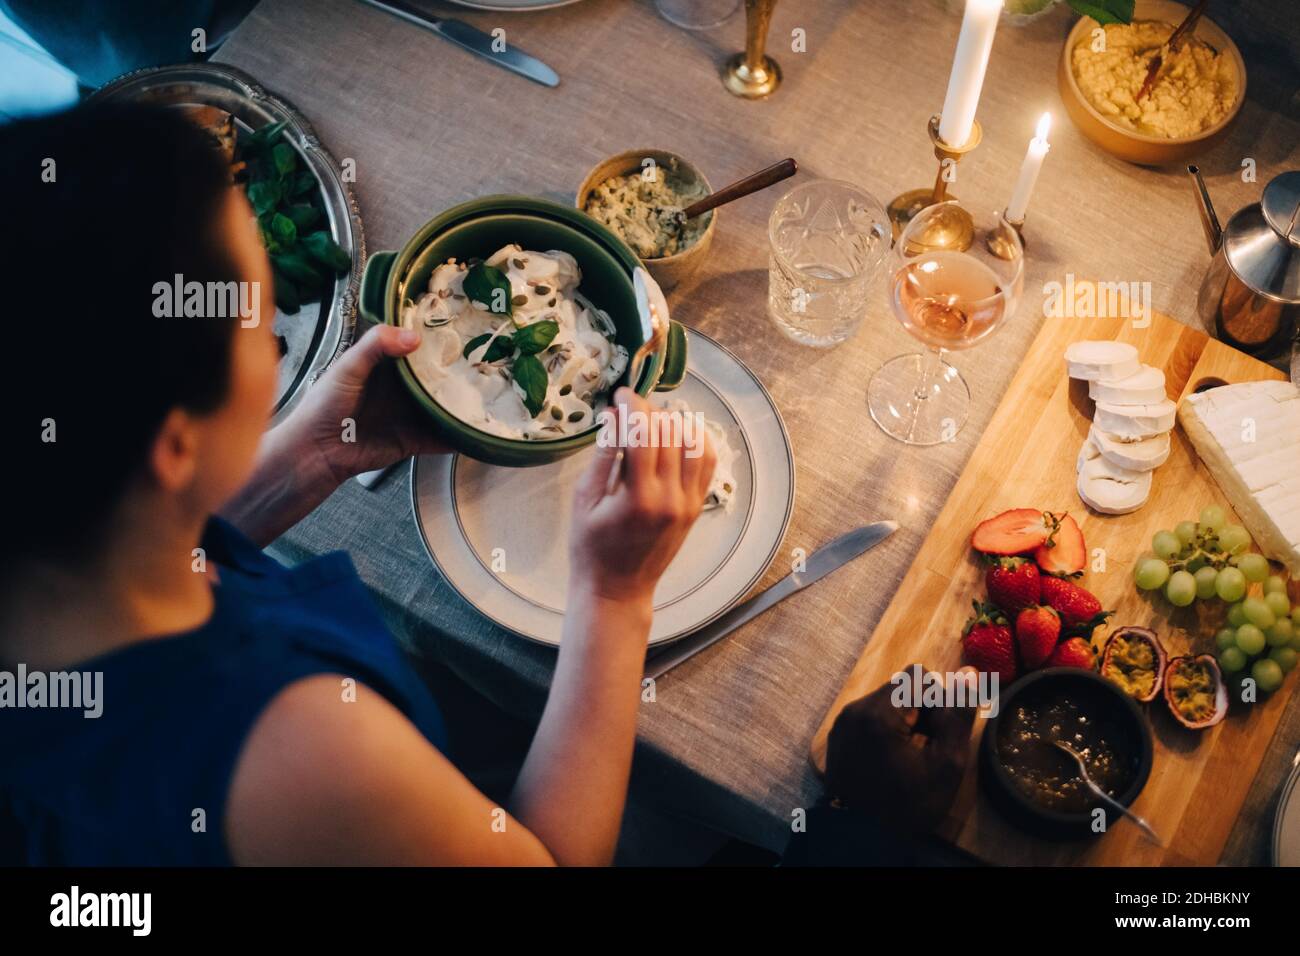 Vue en grand angle de la femme qui mange à la table à manger pour le dîner Banque D'Images